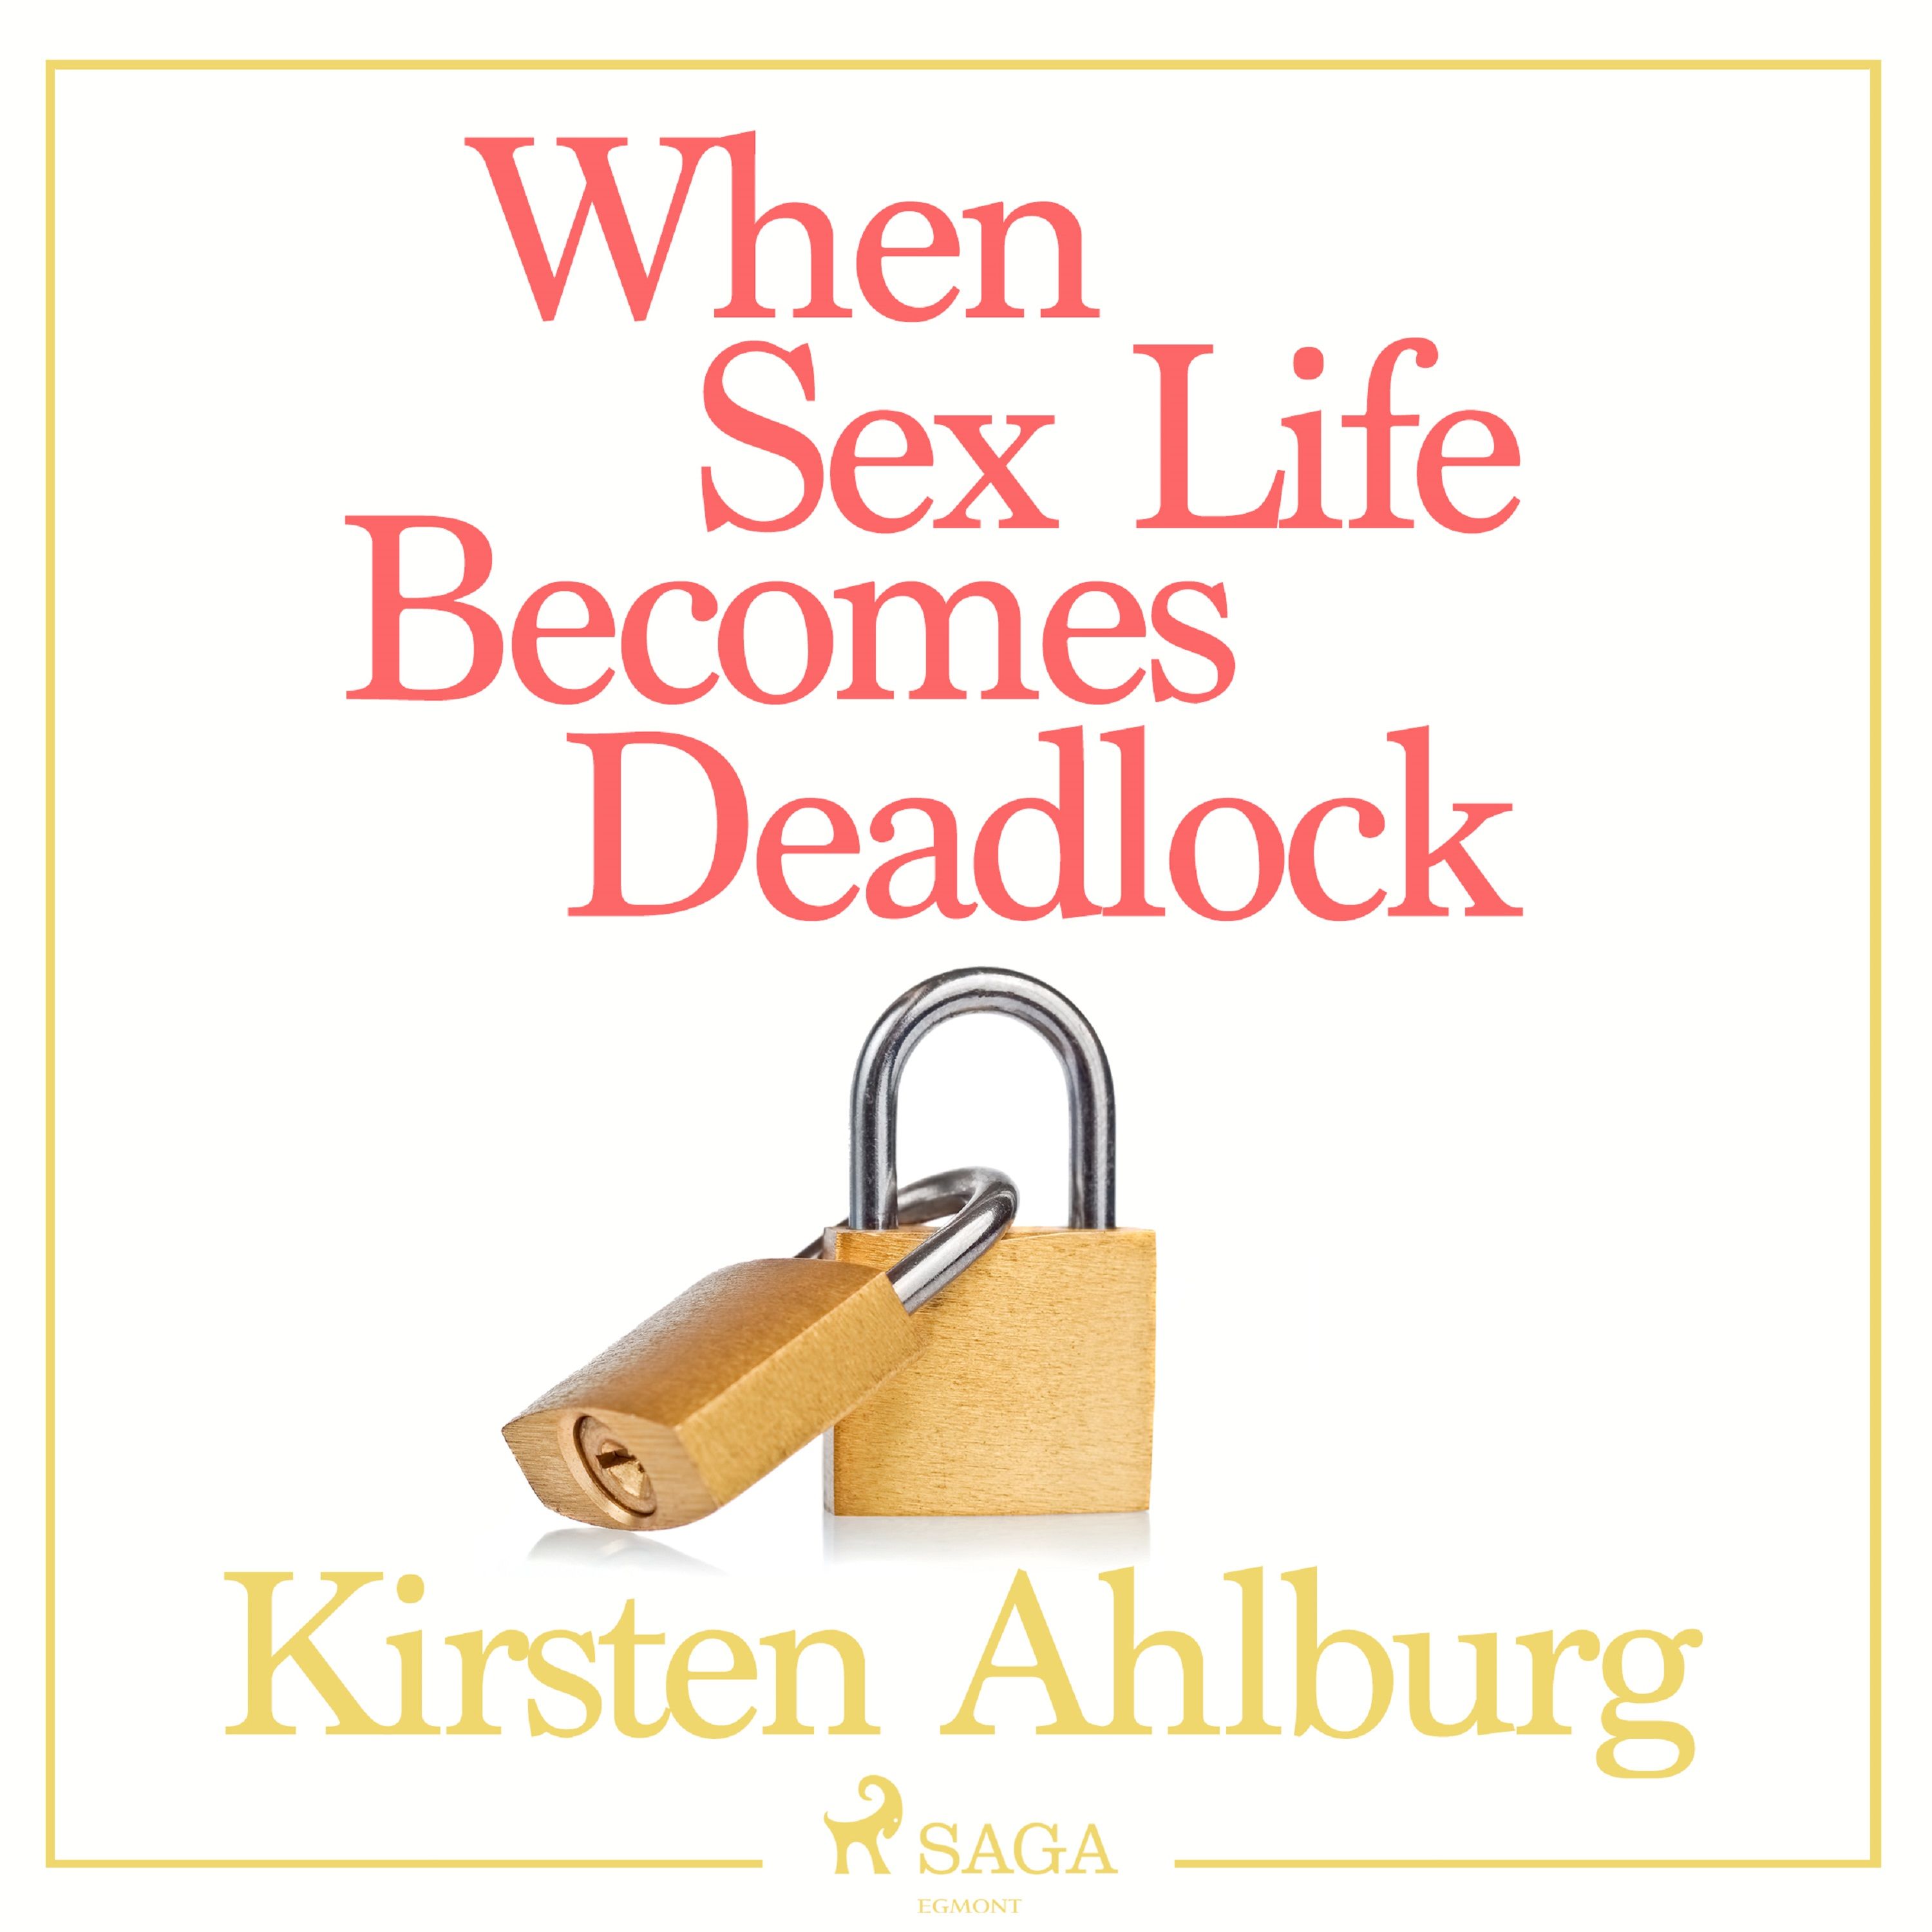 When Sex Life Becomes Deadlock, ljudbok av Kirsten Ahlburg